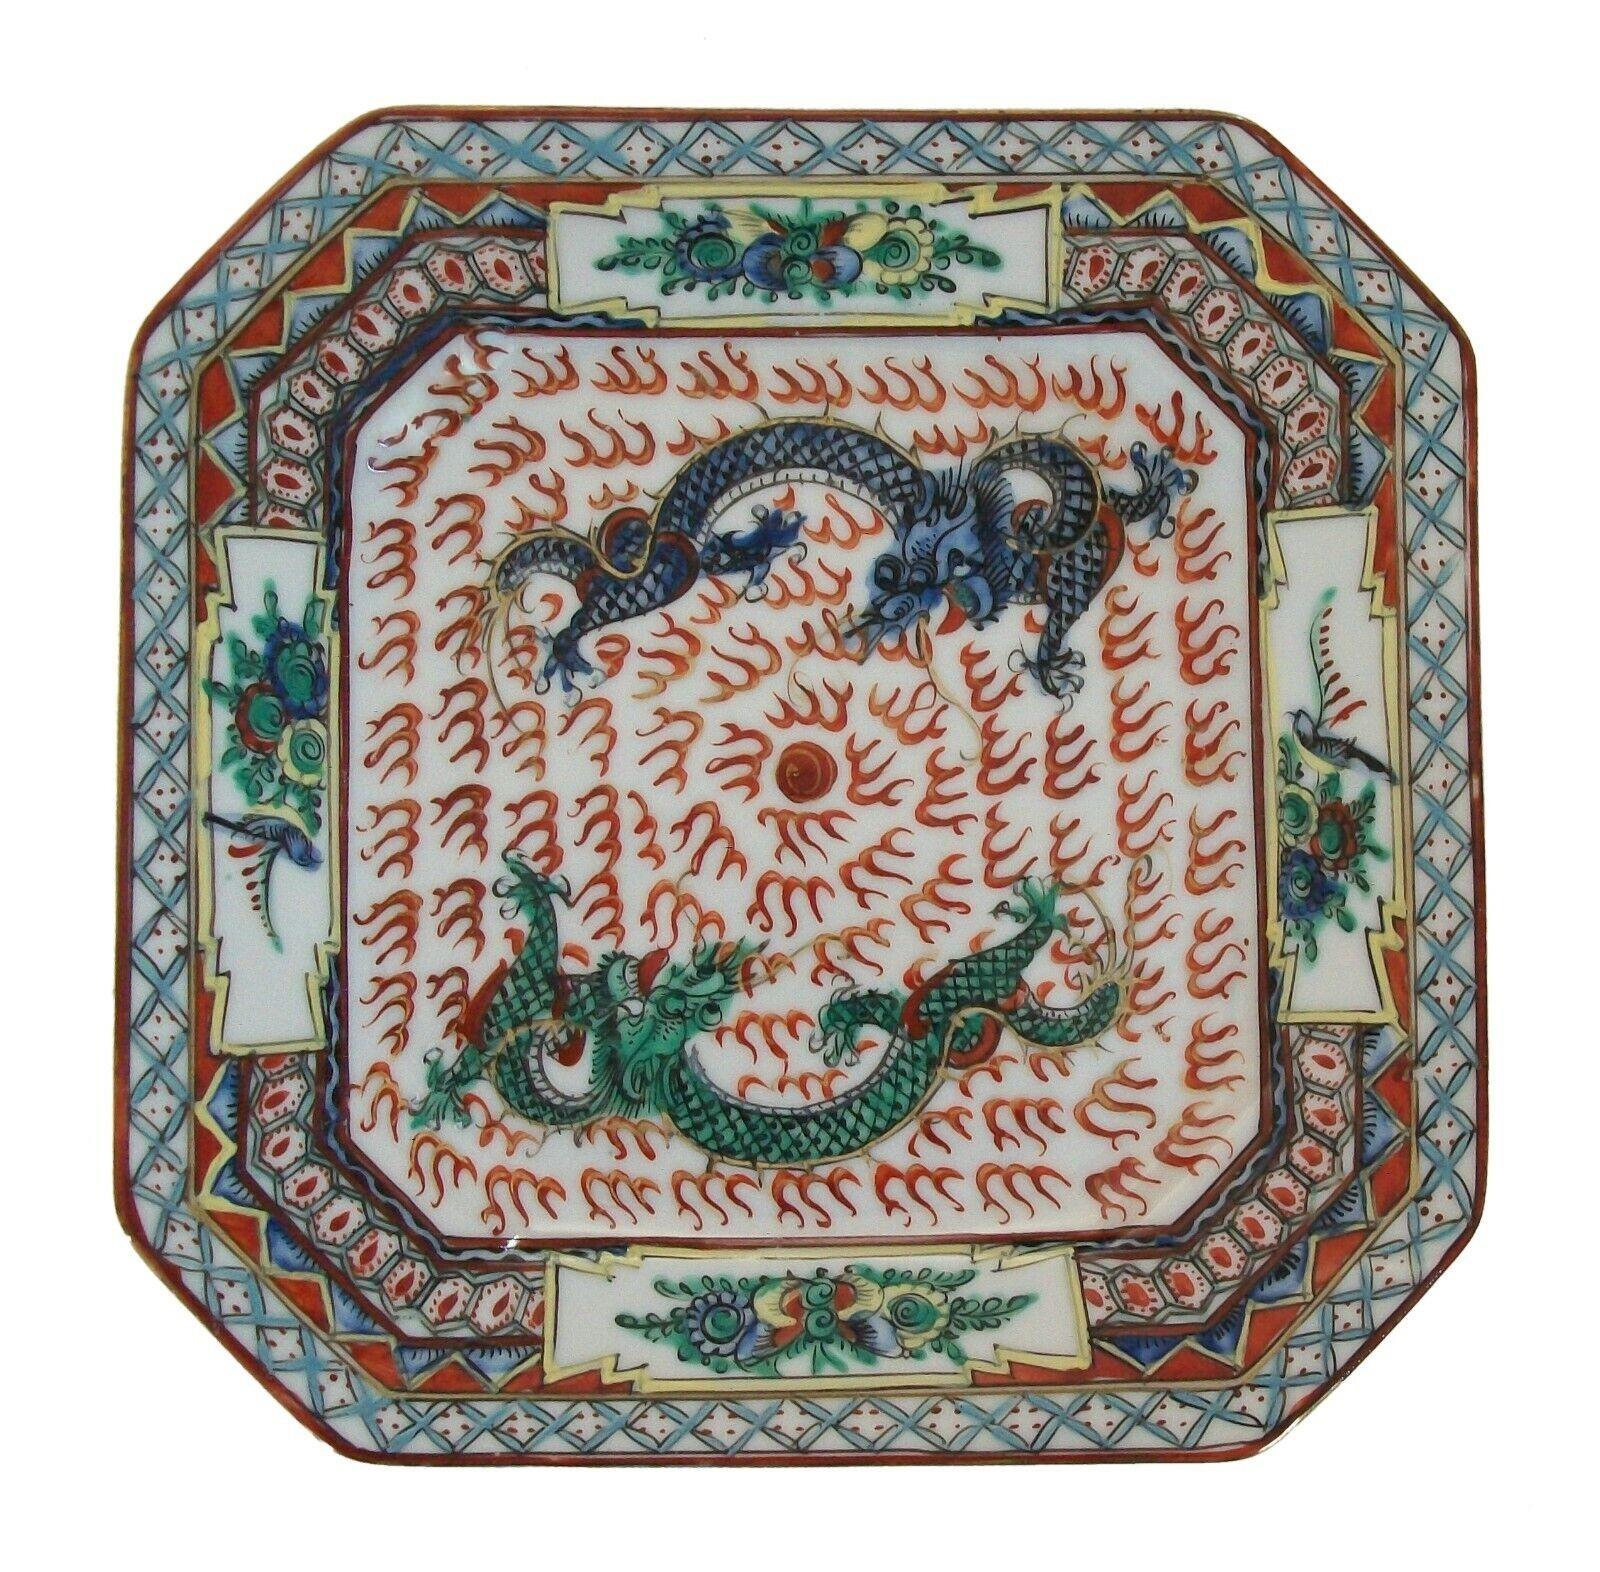 Assiette ancienne en porcelaine - peinte à la main de deux dragons poursuivant une perle enflammée - bordure florale et géométrique - coins inclinés - traces de dorure d'origine - signée d'une marque Qianlong à quatre caractères rouges au dos -